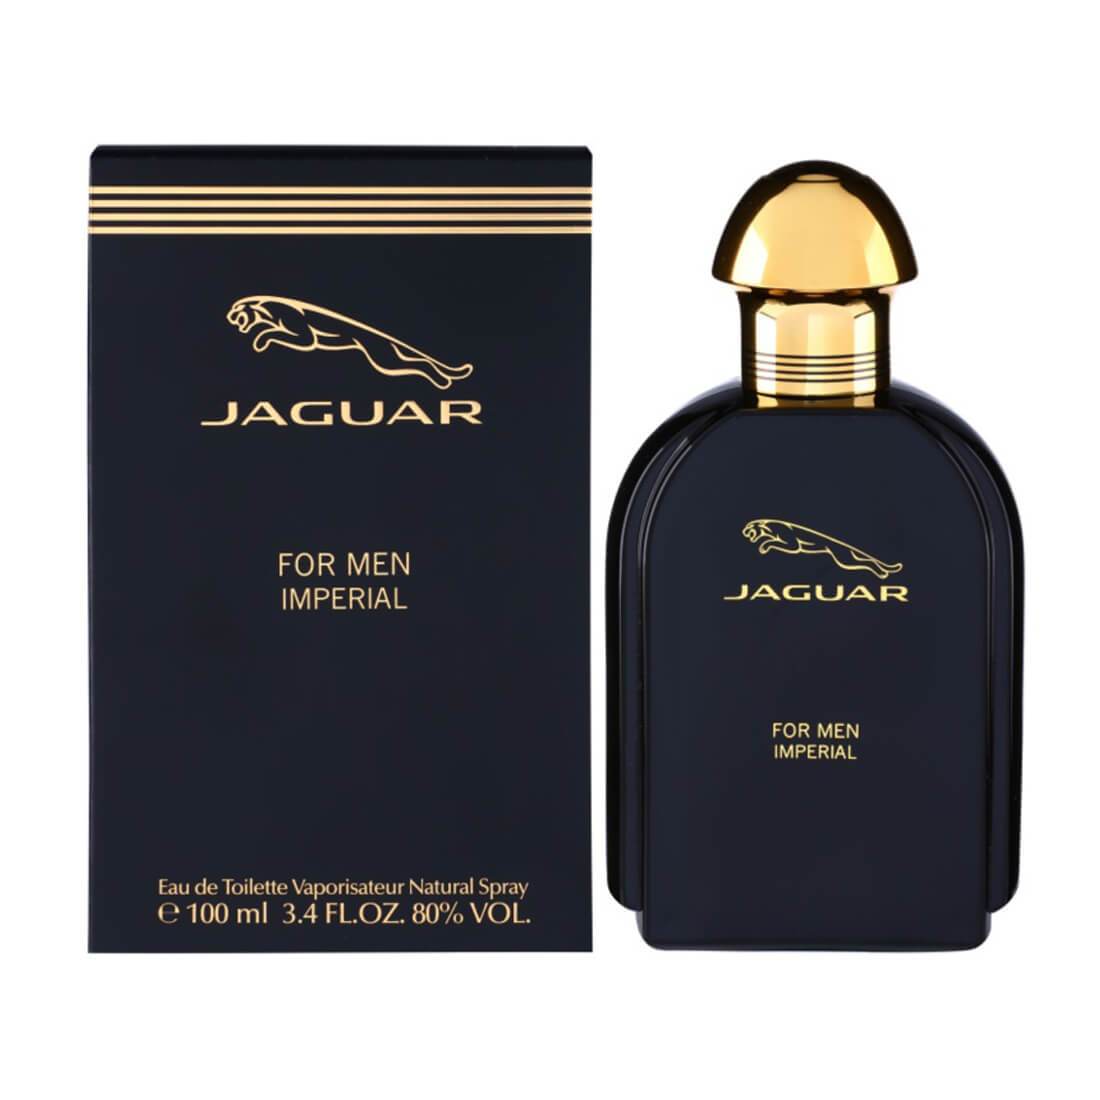 Jaguar Imperial EDT Perfume For Men - 100ml